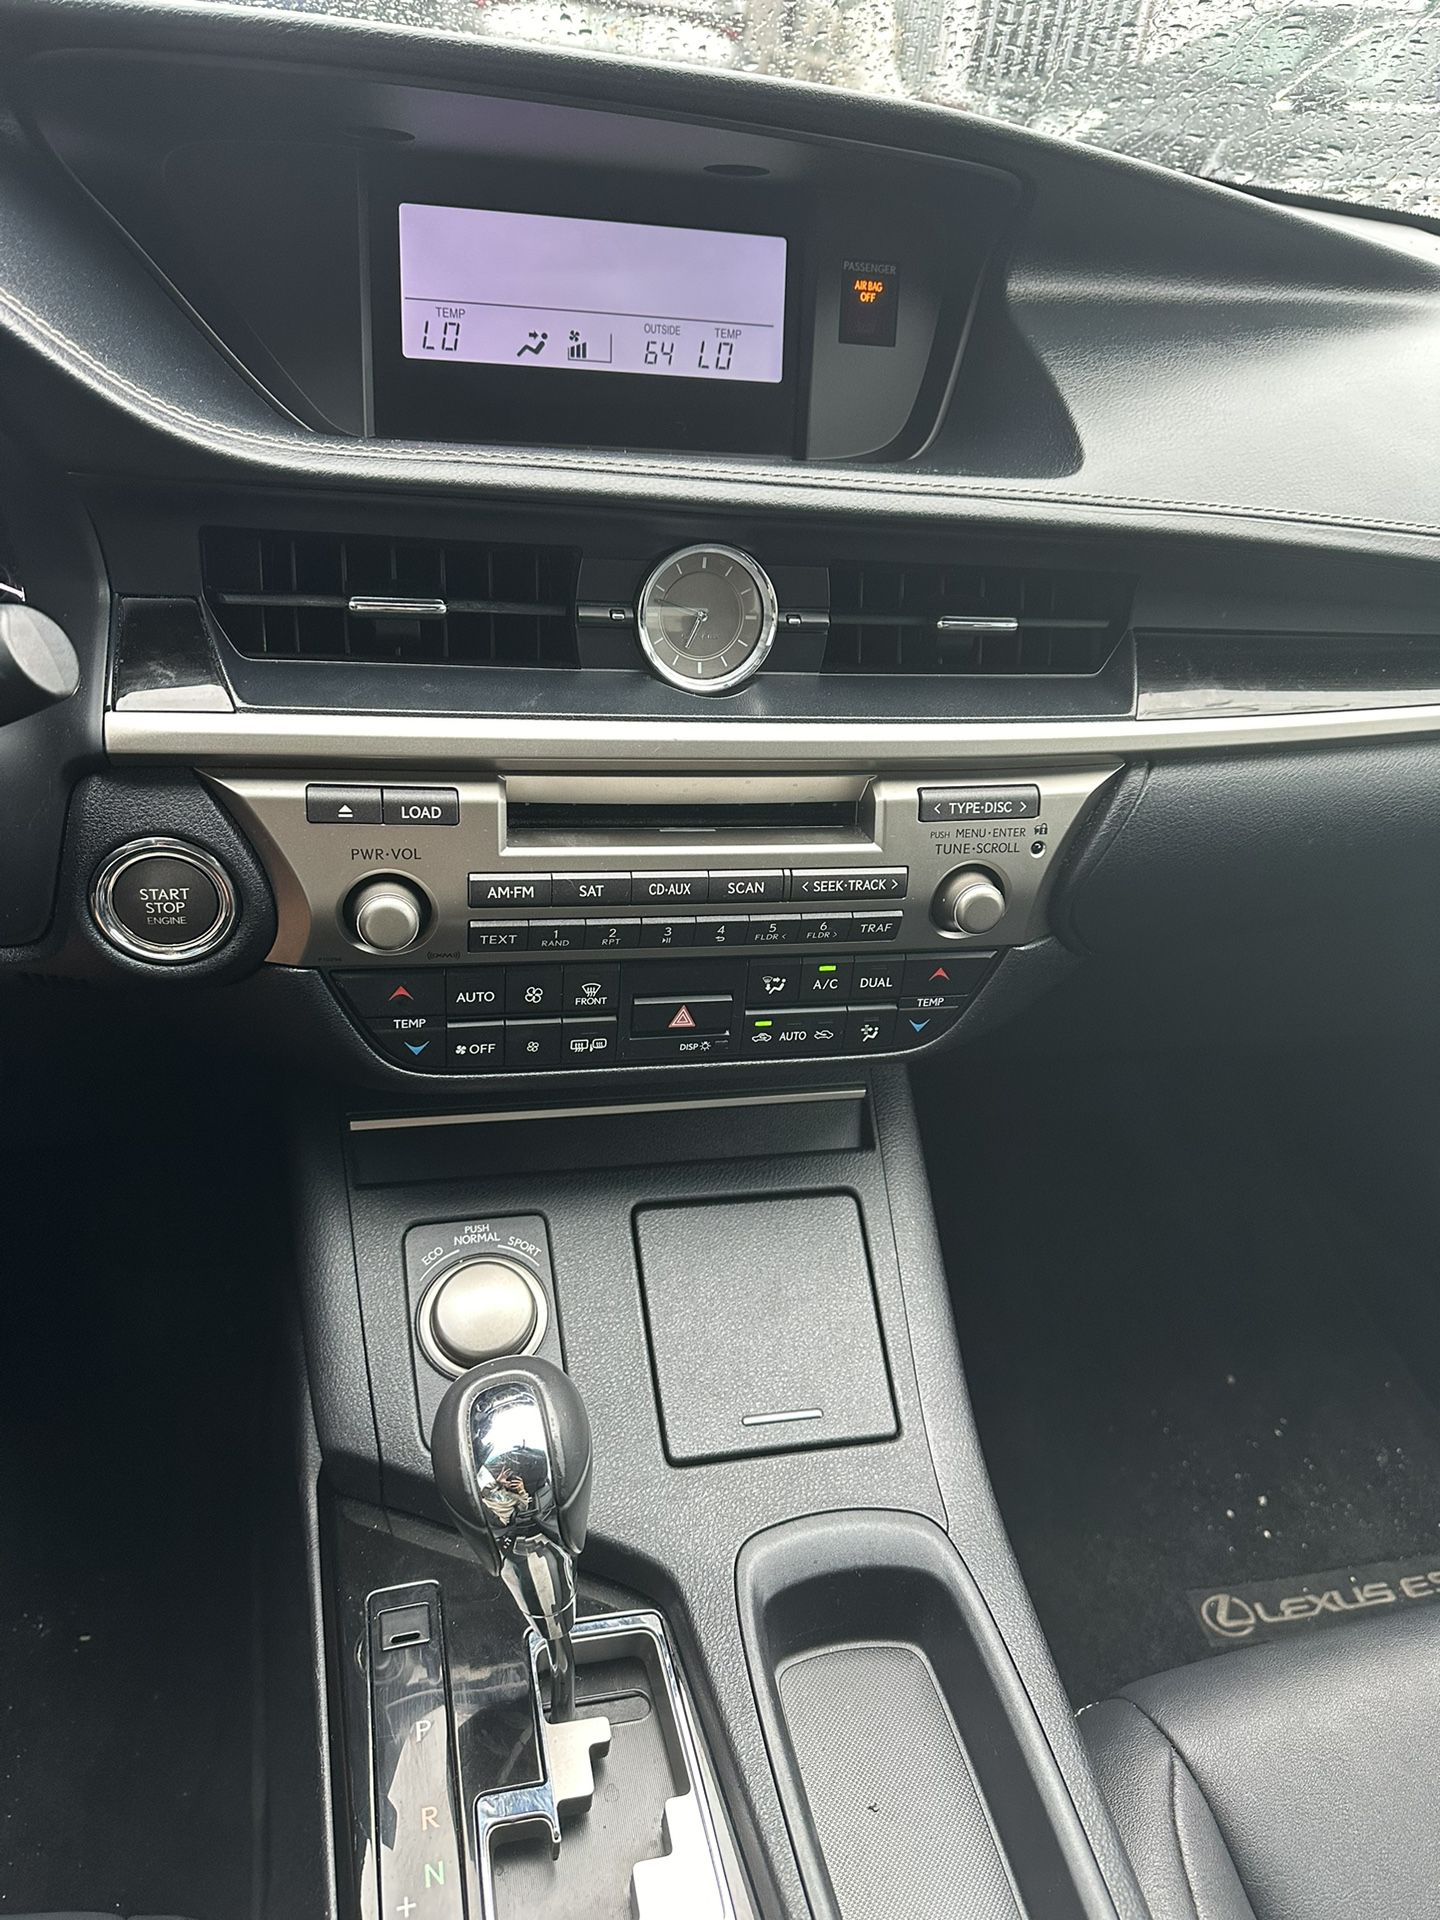 used 2014 lexus ES 350 - interior view 3